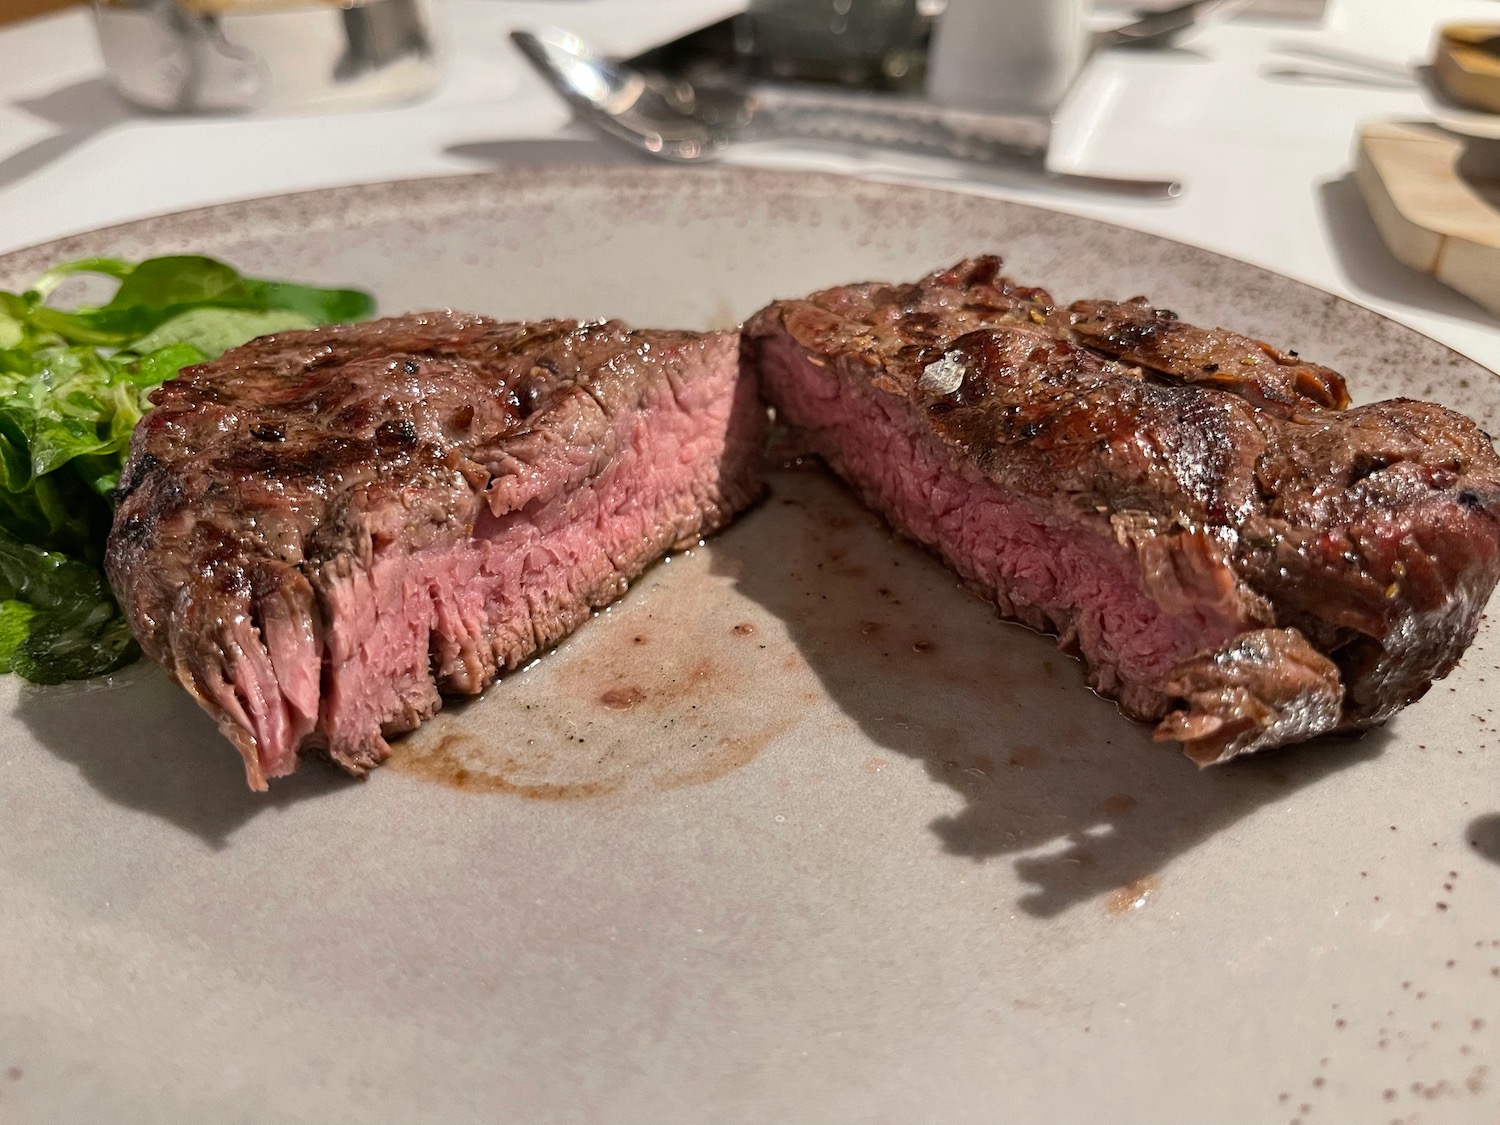 a steak cut in half on a plate